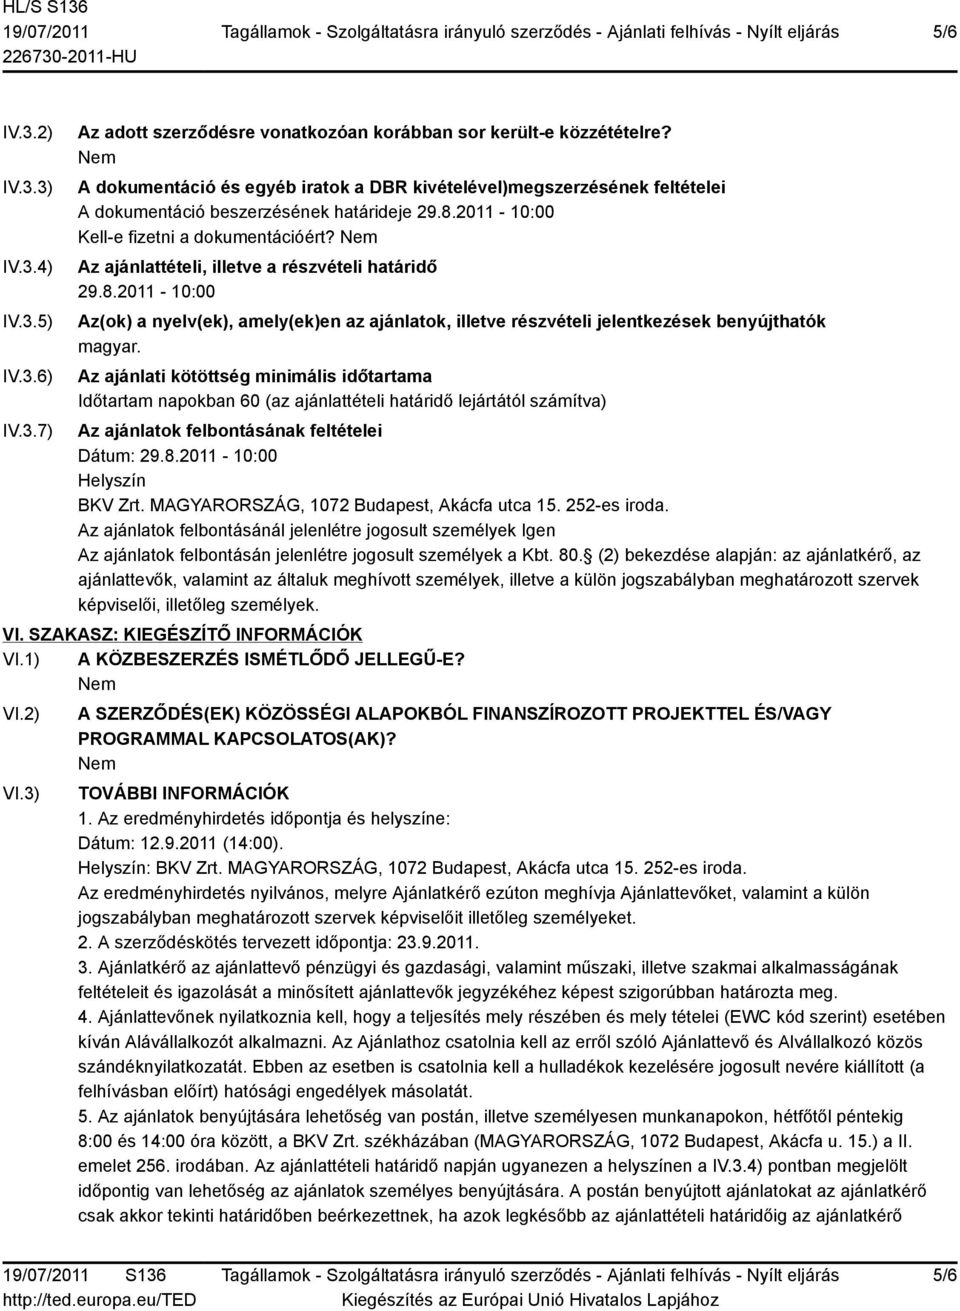 Az ajánlattételi, illetve a részvételi határidő 29.8.2011-10:00 Az(ok) a nyelv(ek), amely(ek)en az ajánlatok, illetve részvételi jelentkezések benyújthatók magyar.